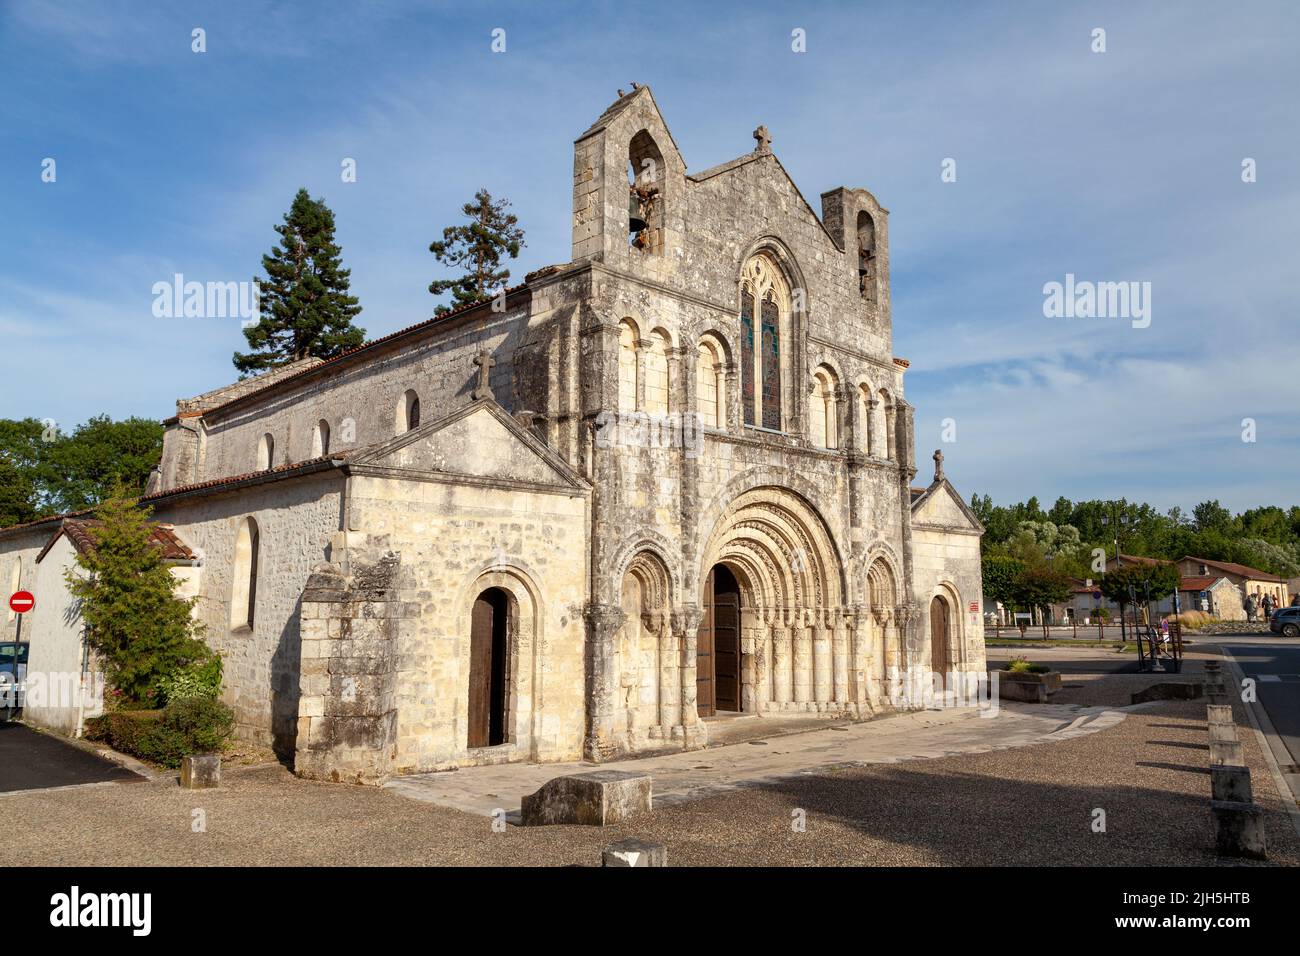 Église Saint-Vivien de Pons, Charente-Maritime, France. Stock Photo